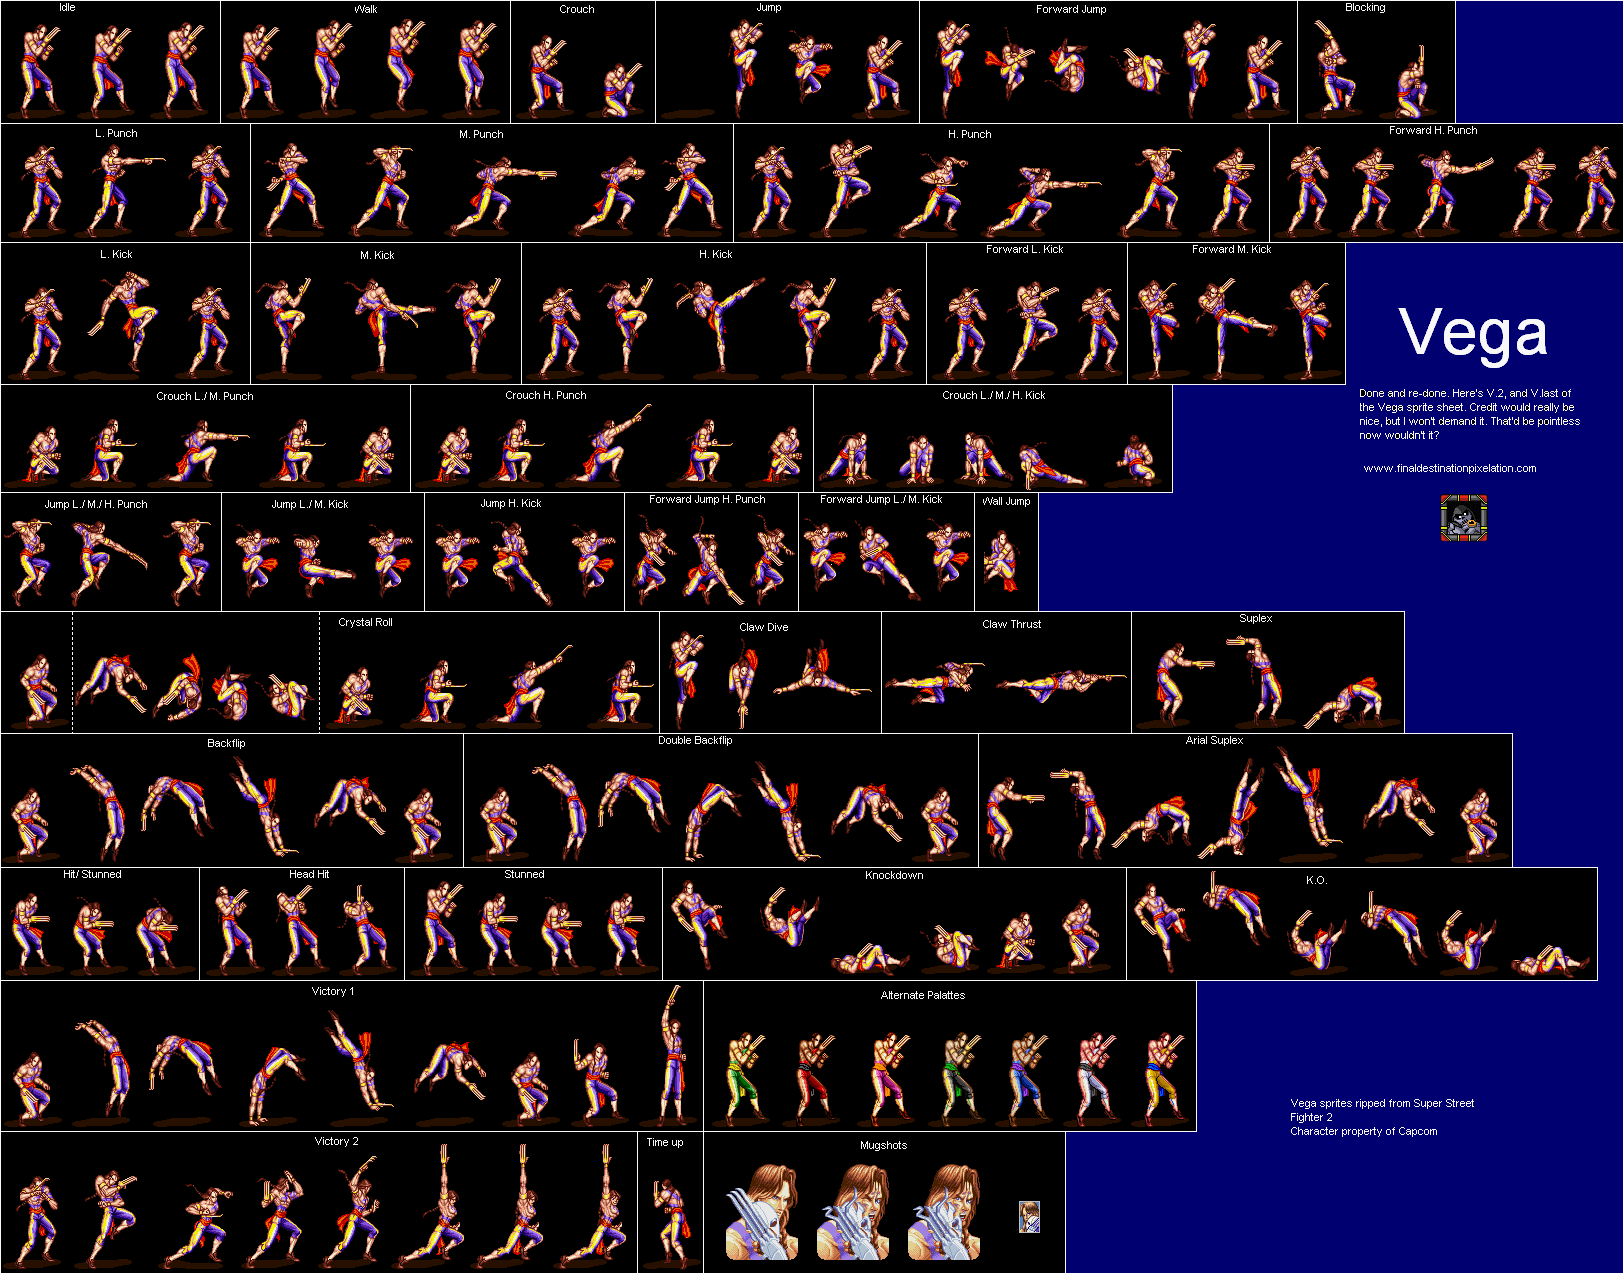 Vega/Sprites, Street Fighter Wiki